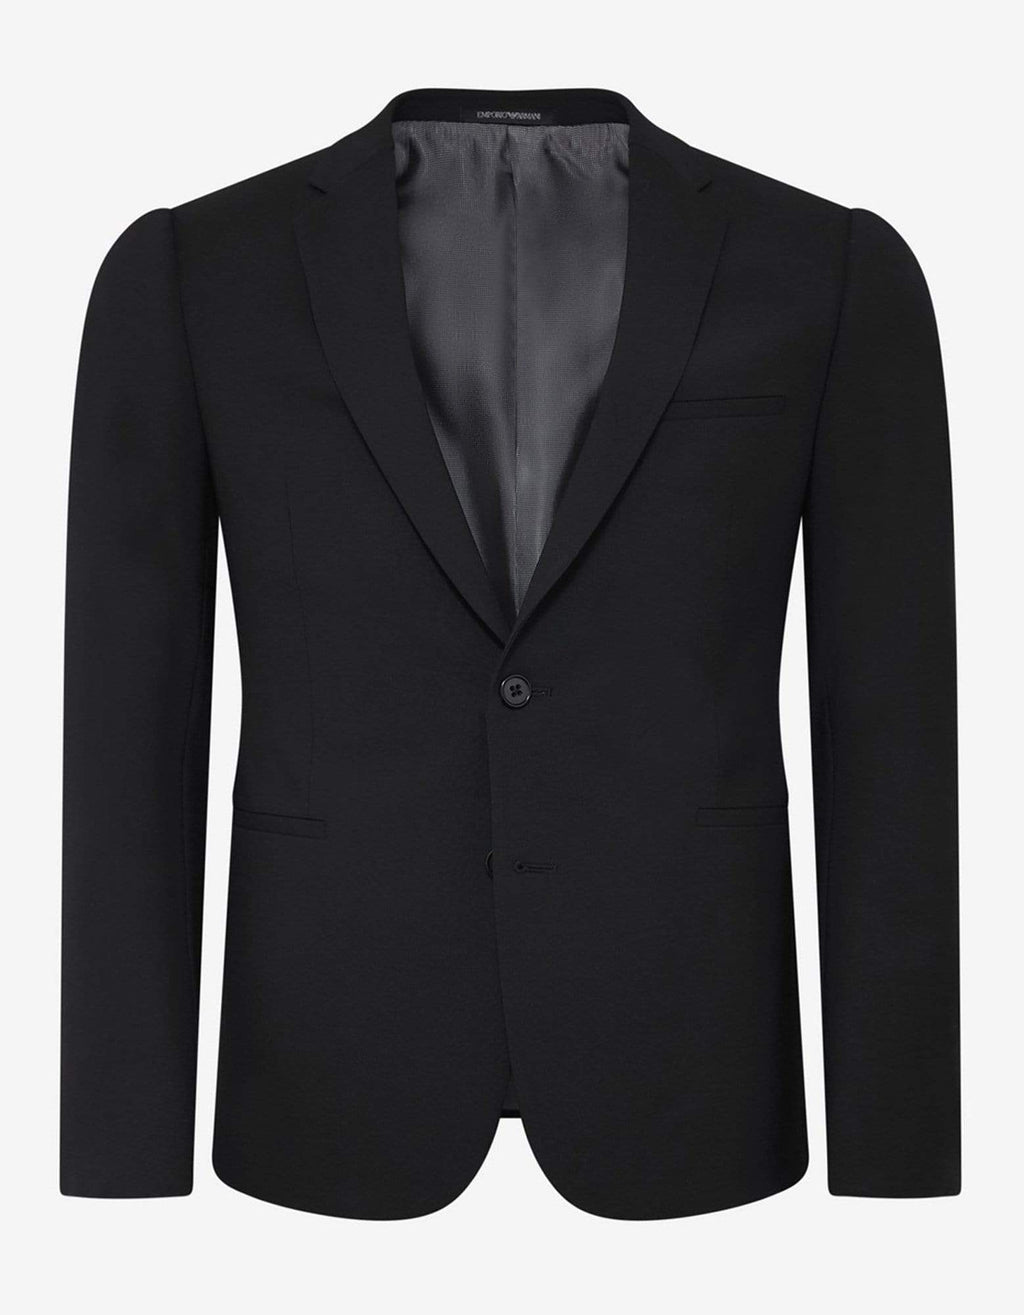 Emporio Armani Black Two-Piece Formal Suit